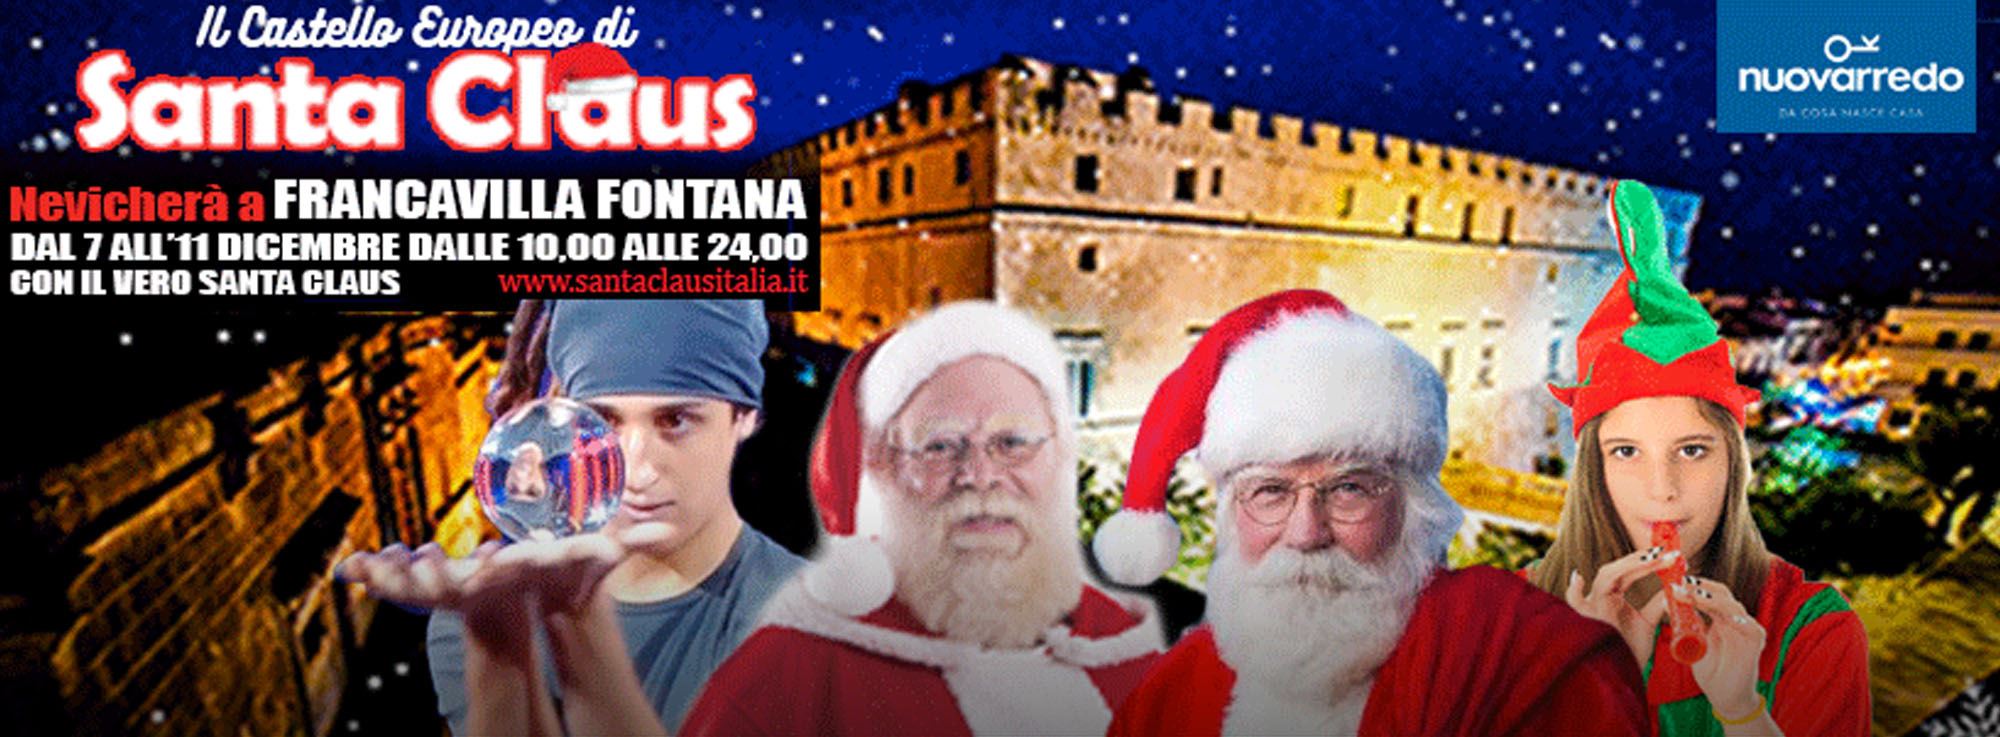 Francavilla Fontana: Il Castello Europeo Di Santa Claus